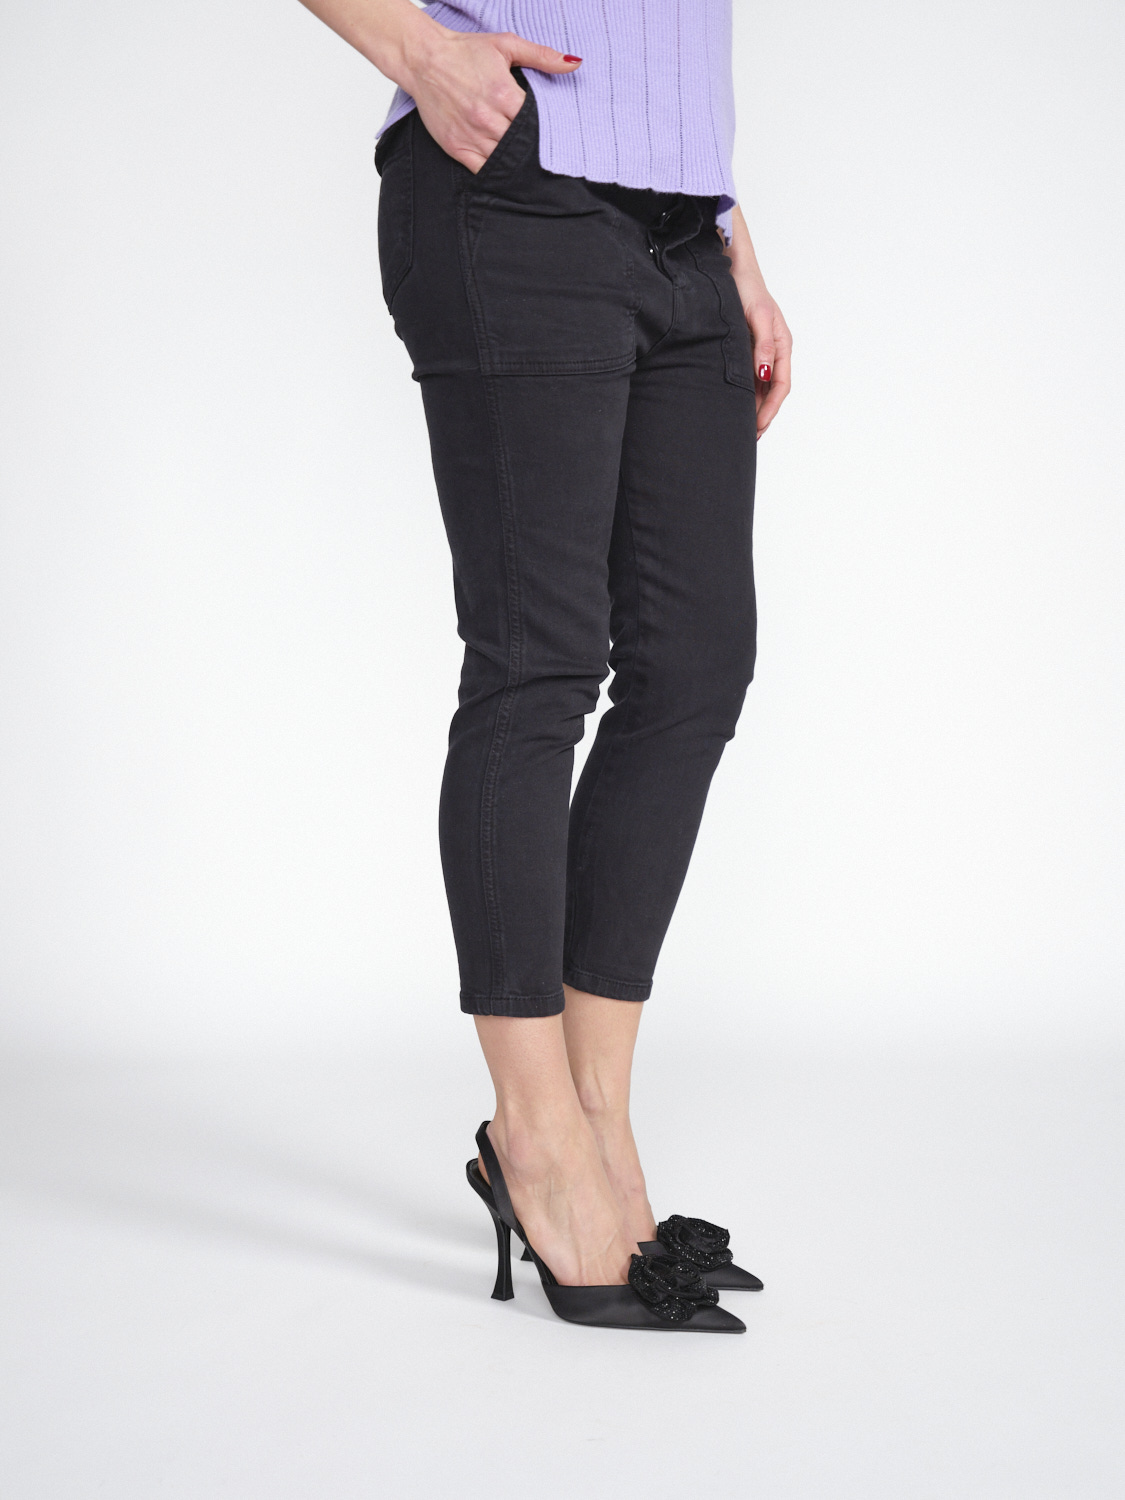 Gitta Banko Pants Harlow - Pantalon trois-quarts stretch en coton   noir XS/S